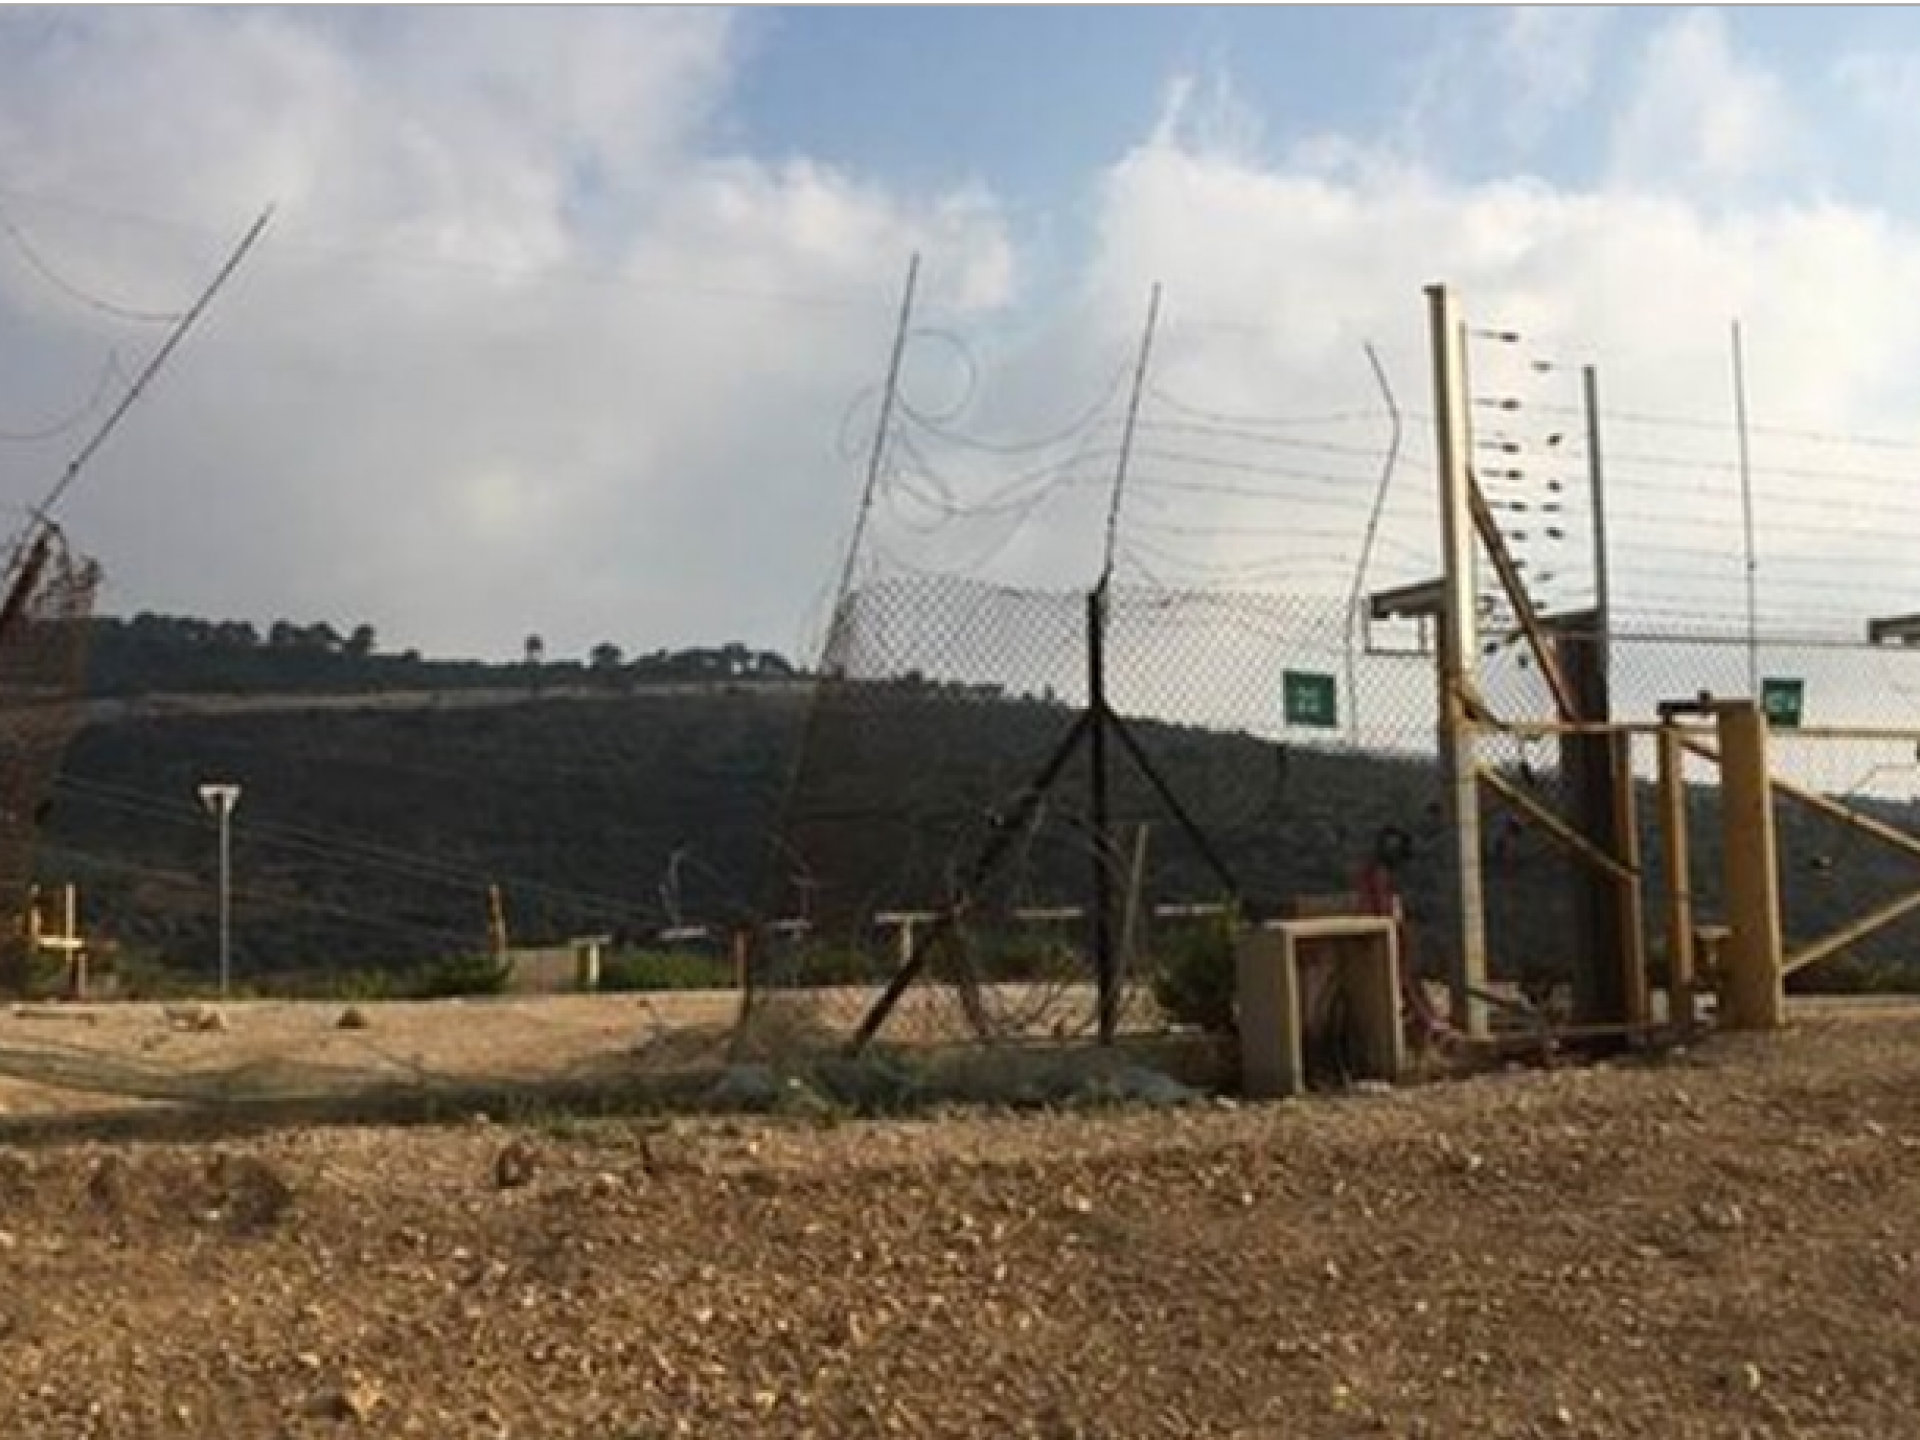 רואים שער צהוב נעול באמצע המחסום ולידו פִרצה גדולה בגדר